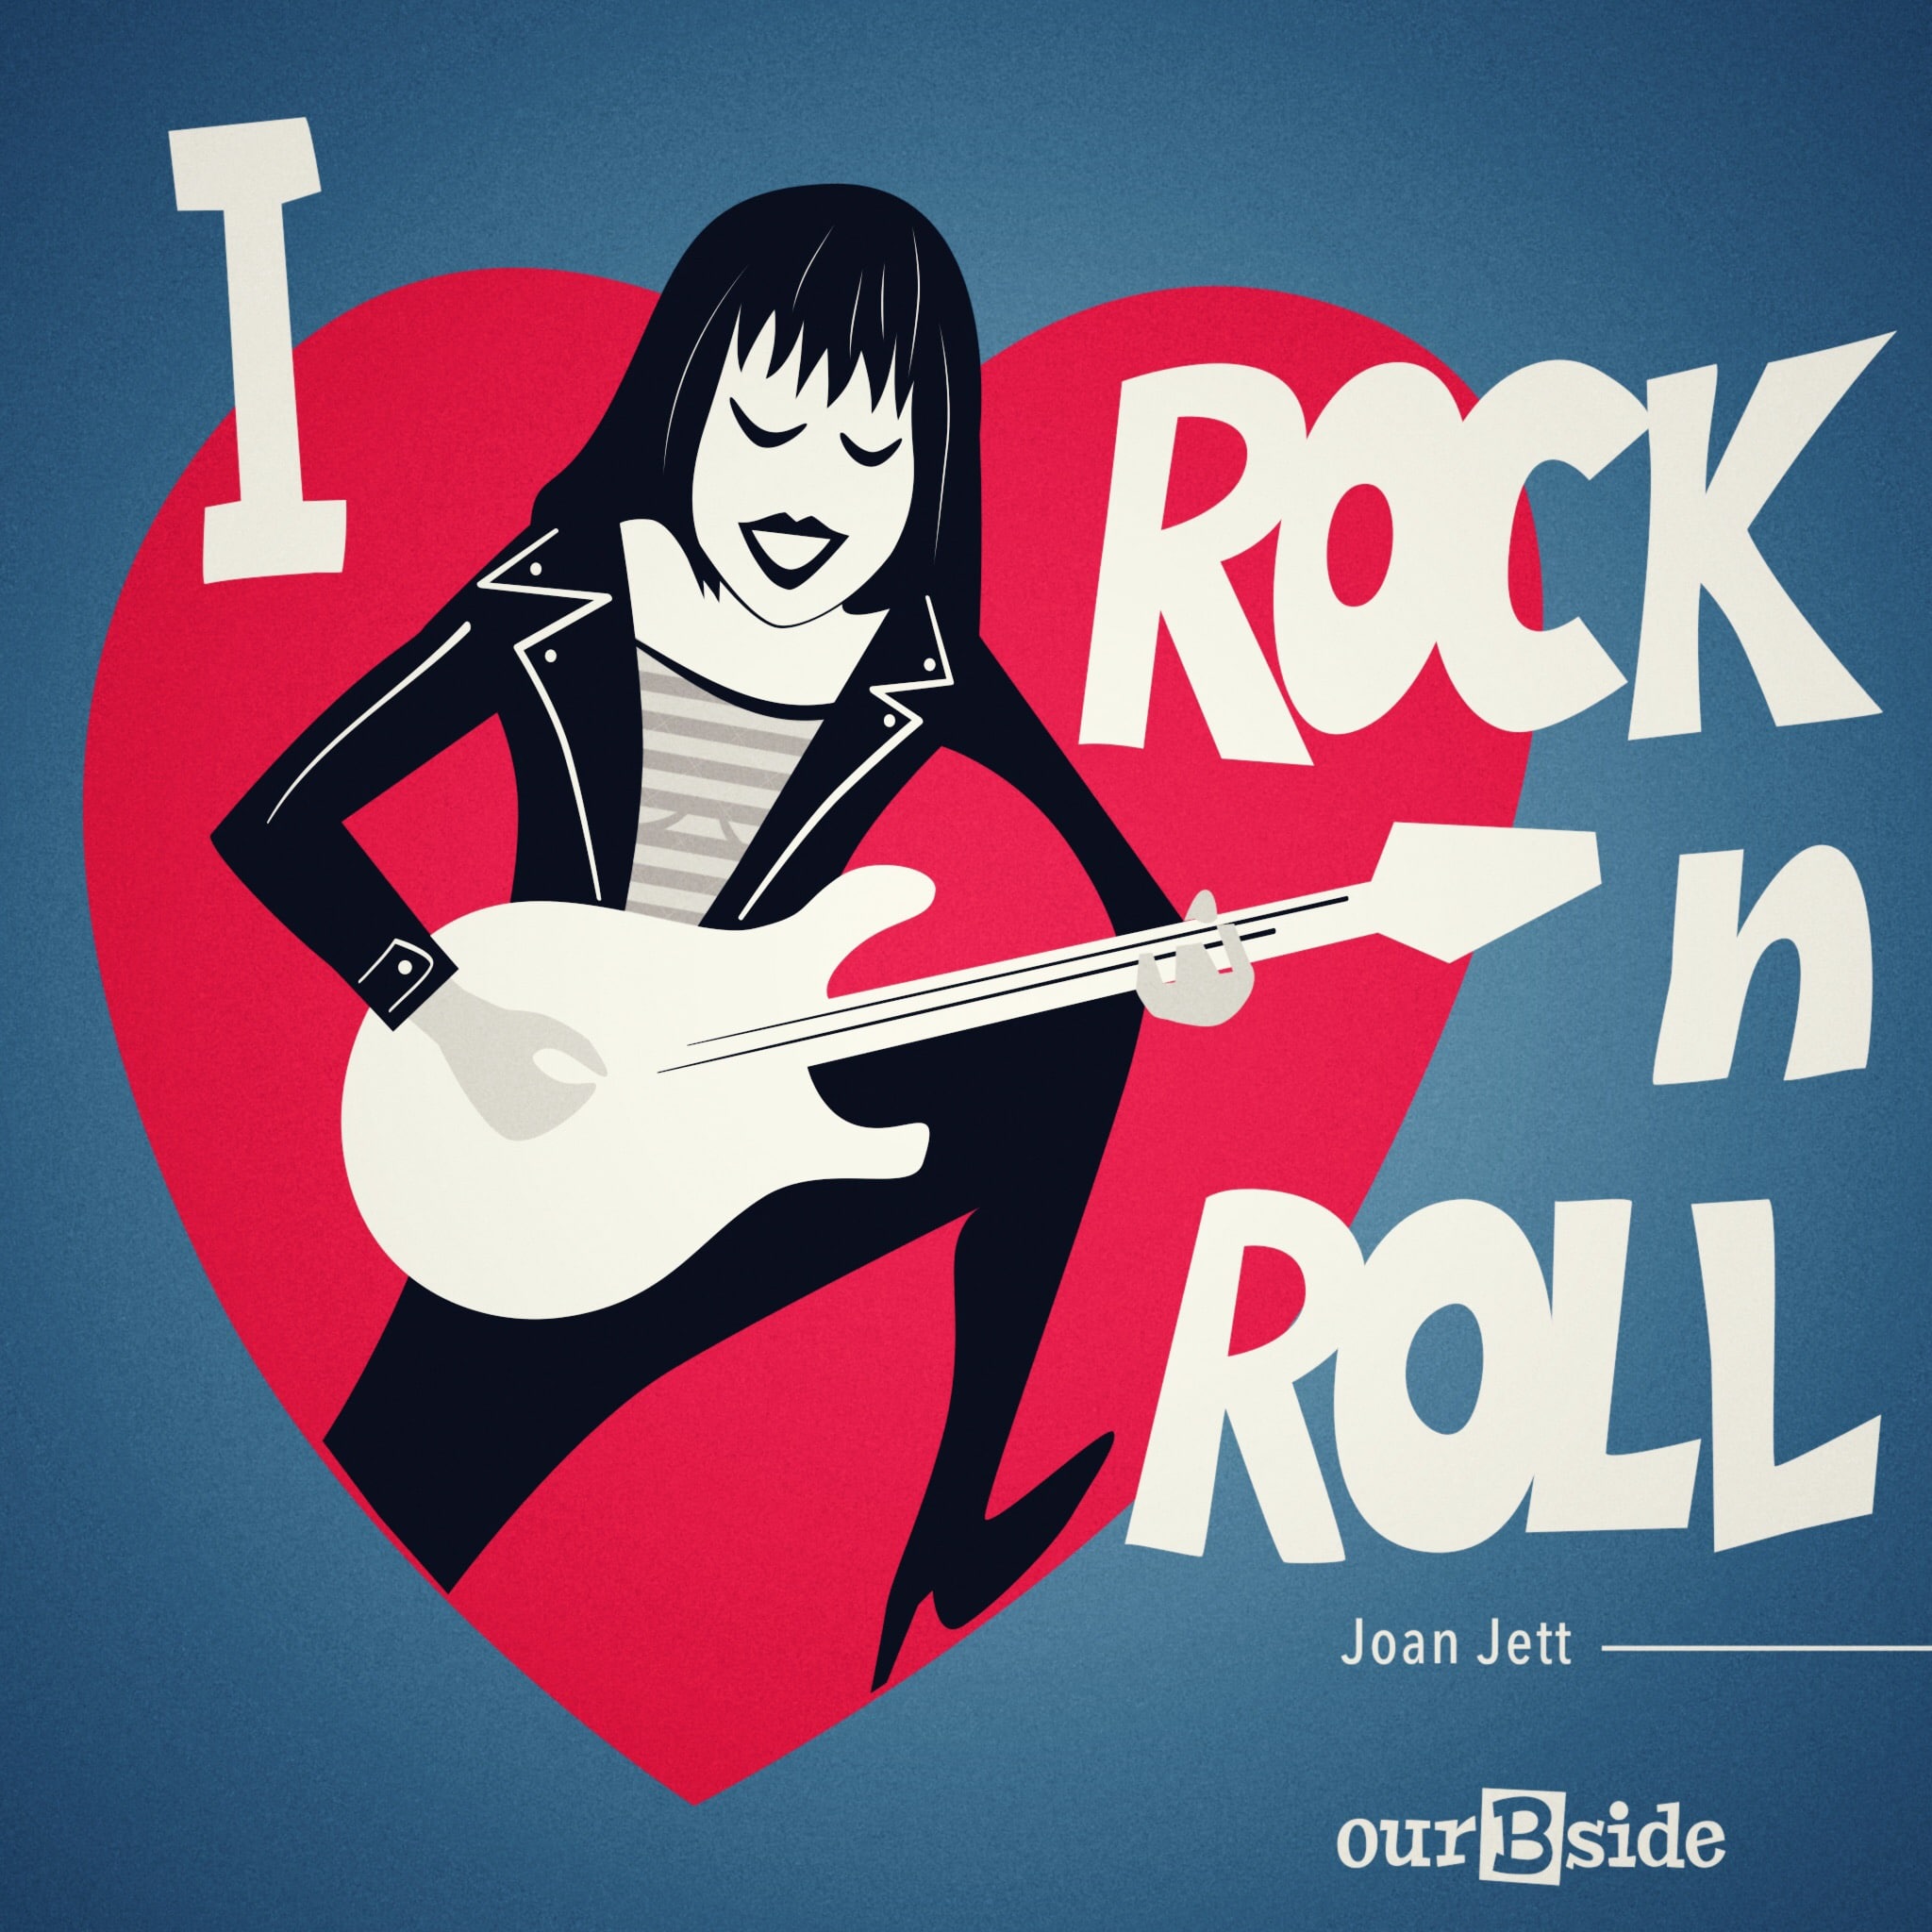 Зарубежный рок ролл. I Love Rock ’n’ Roll (Joan Jett)1982. Постер рок н ролл. Обложка рок н ролл. Обложки ретро рок-н ролл.